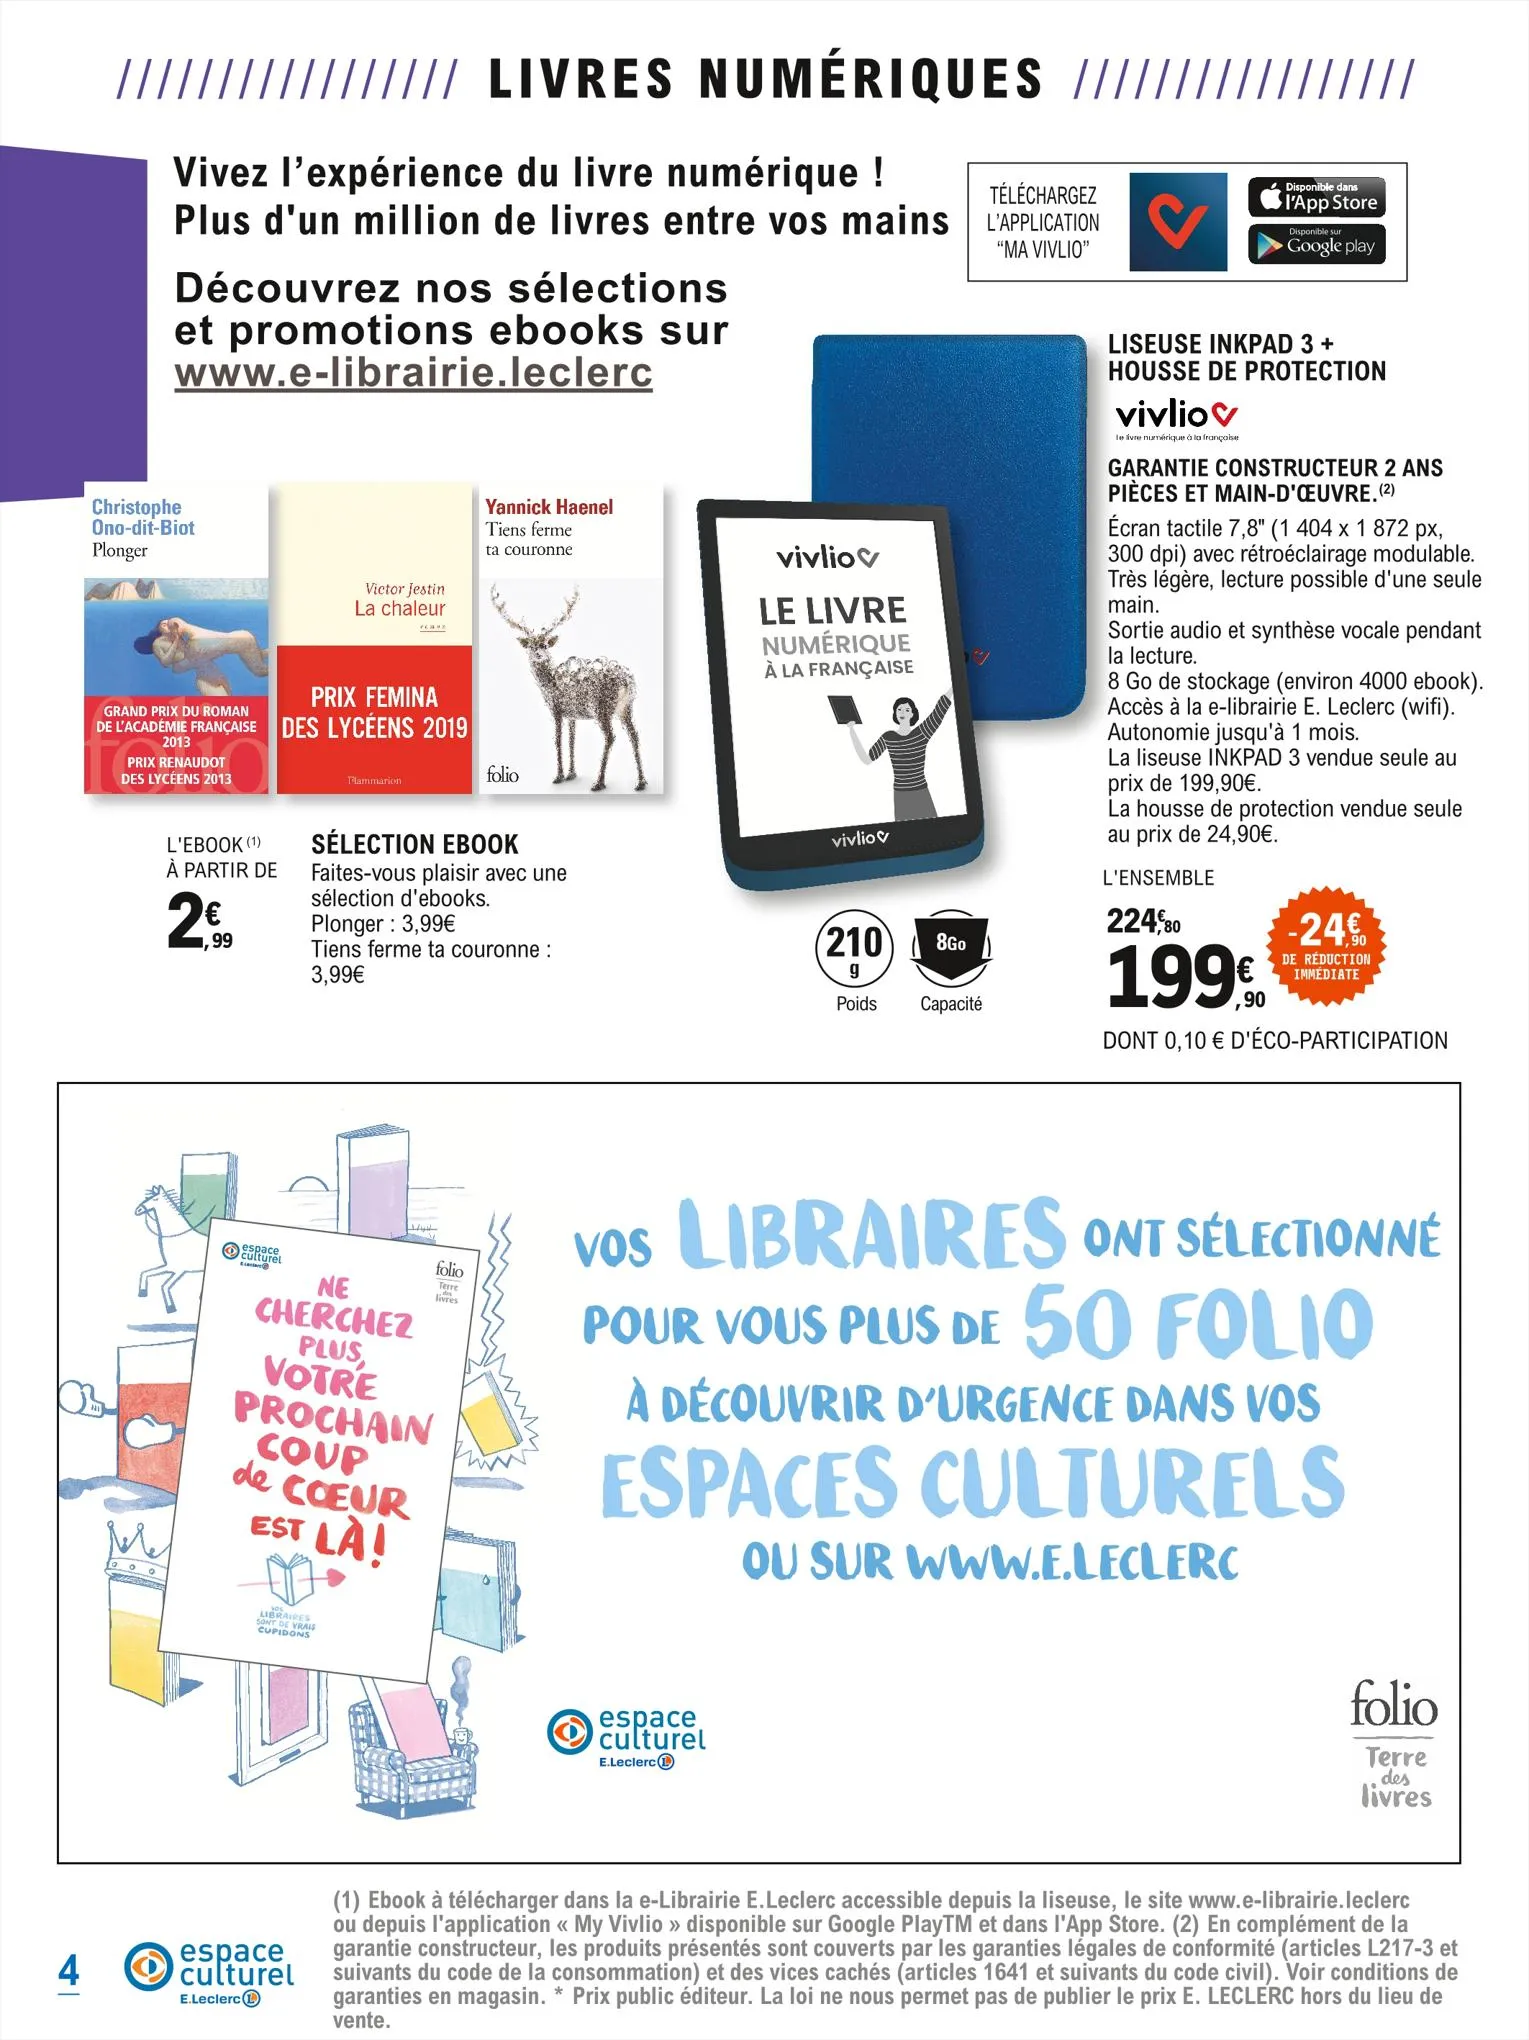 Catalogue Catalogue E.Leclerc, page 00004